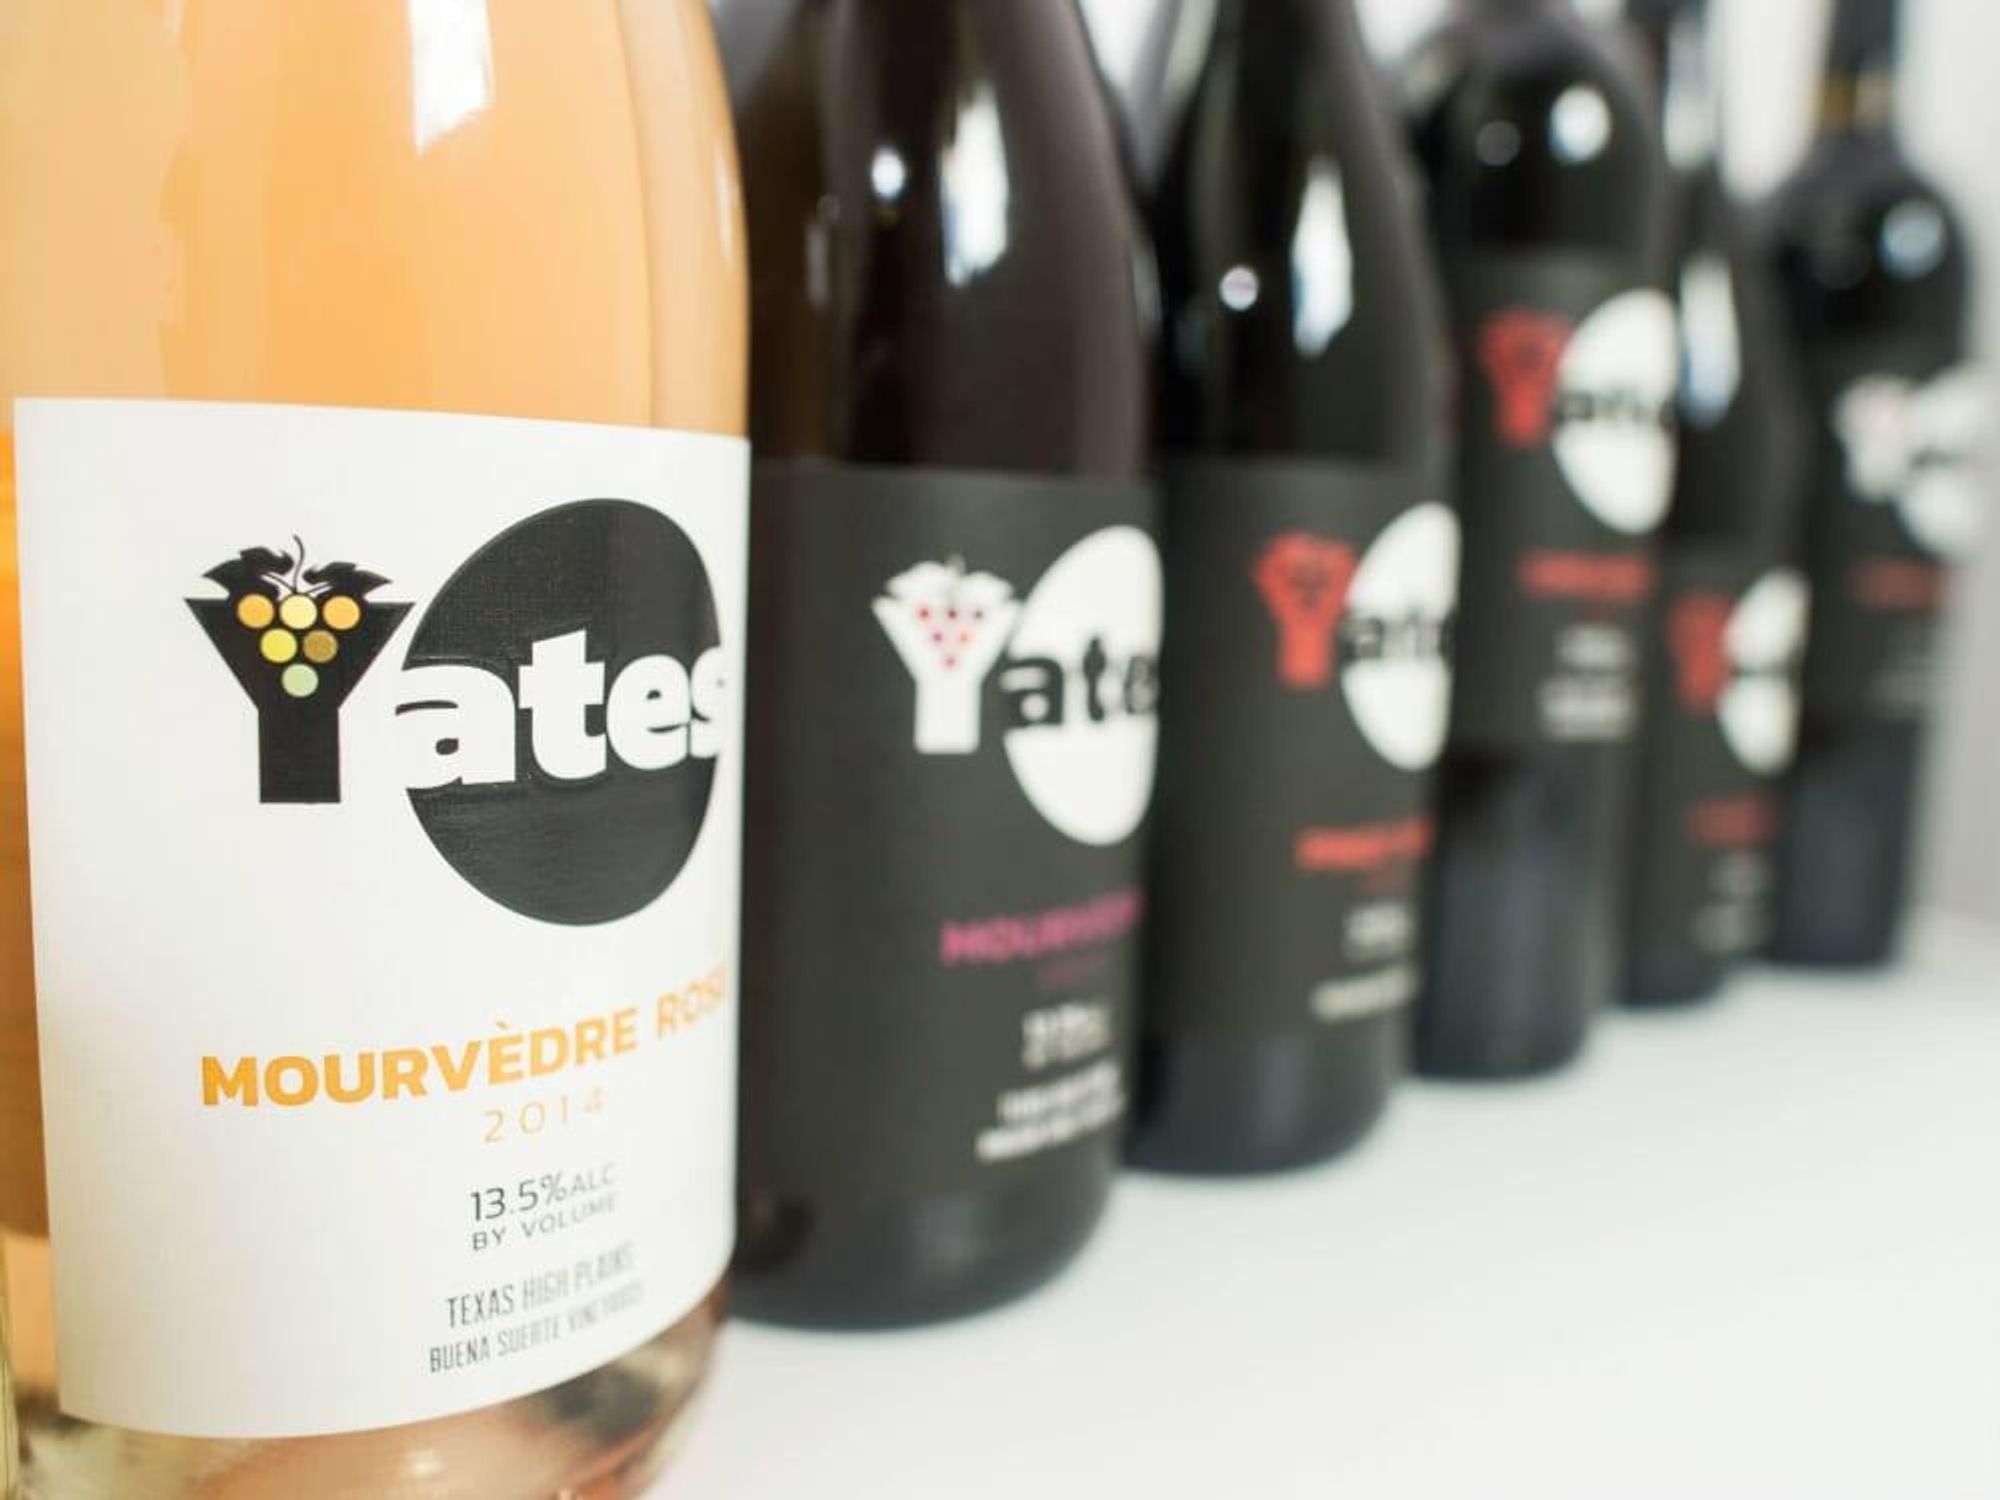 Yates Winery wine bottles